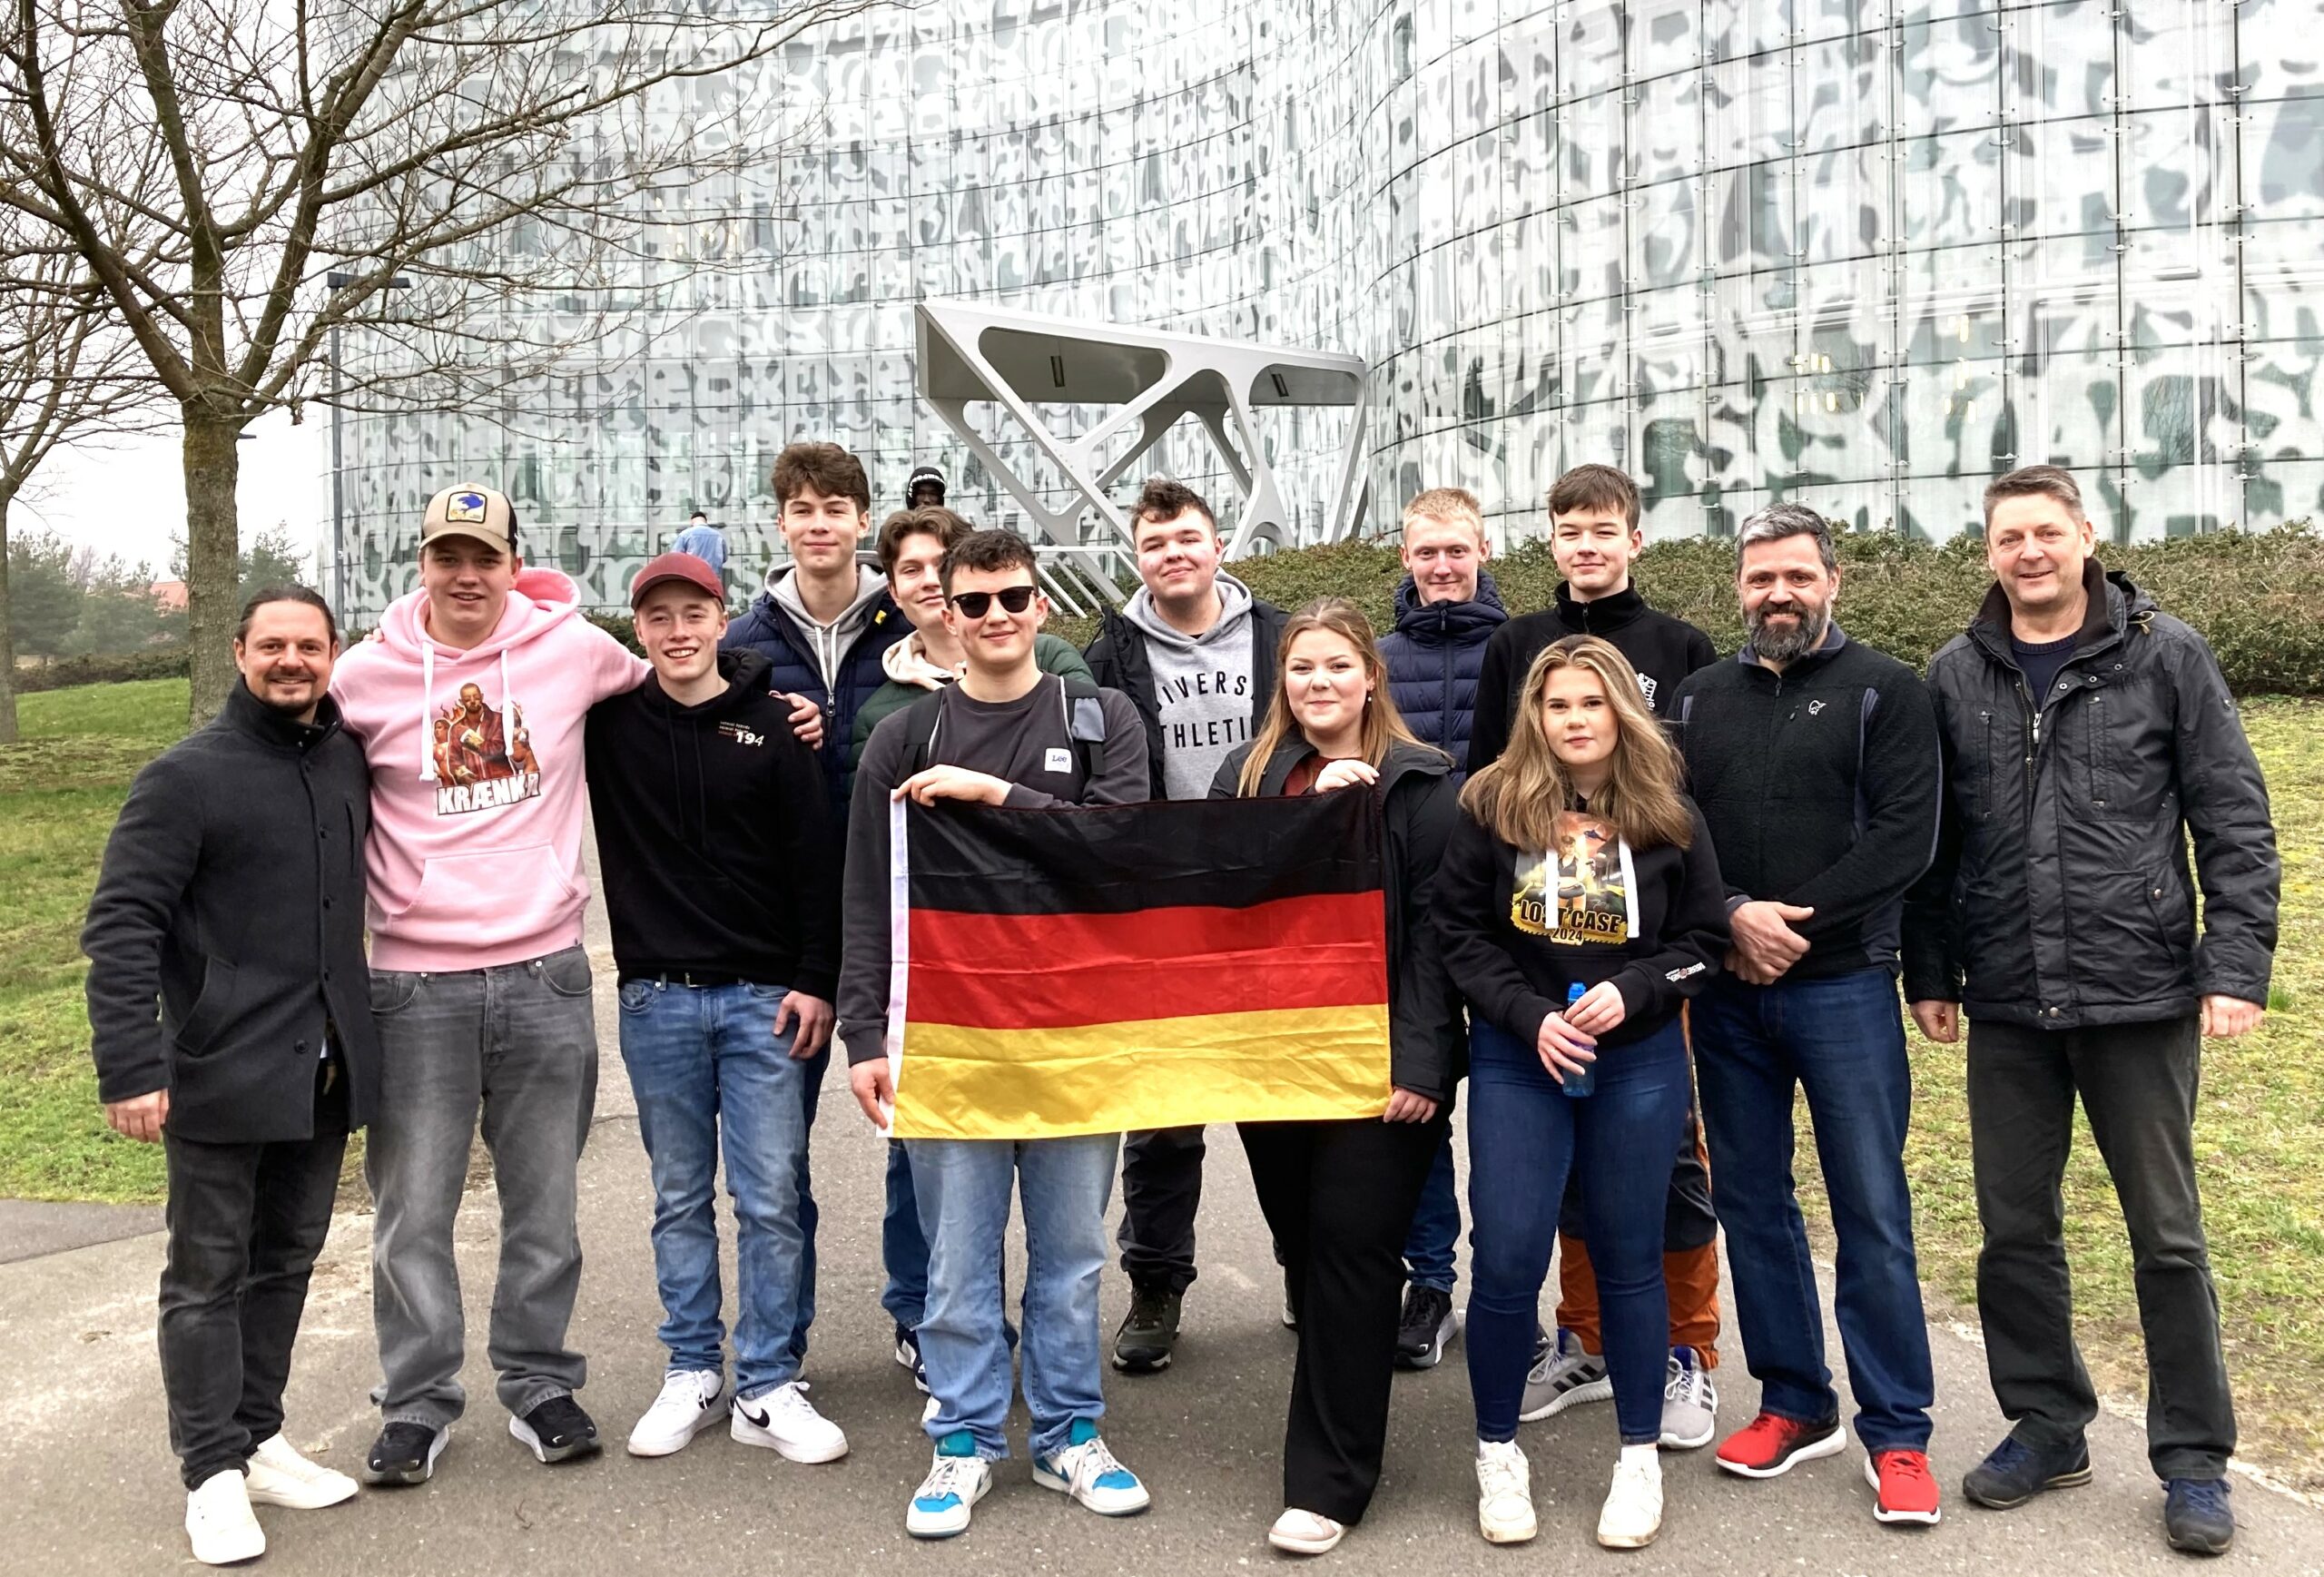 Jugendliche mit einer Deutschlandflagge in der Hand